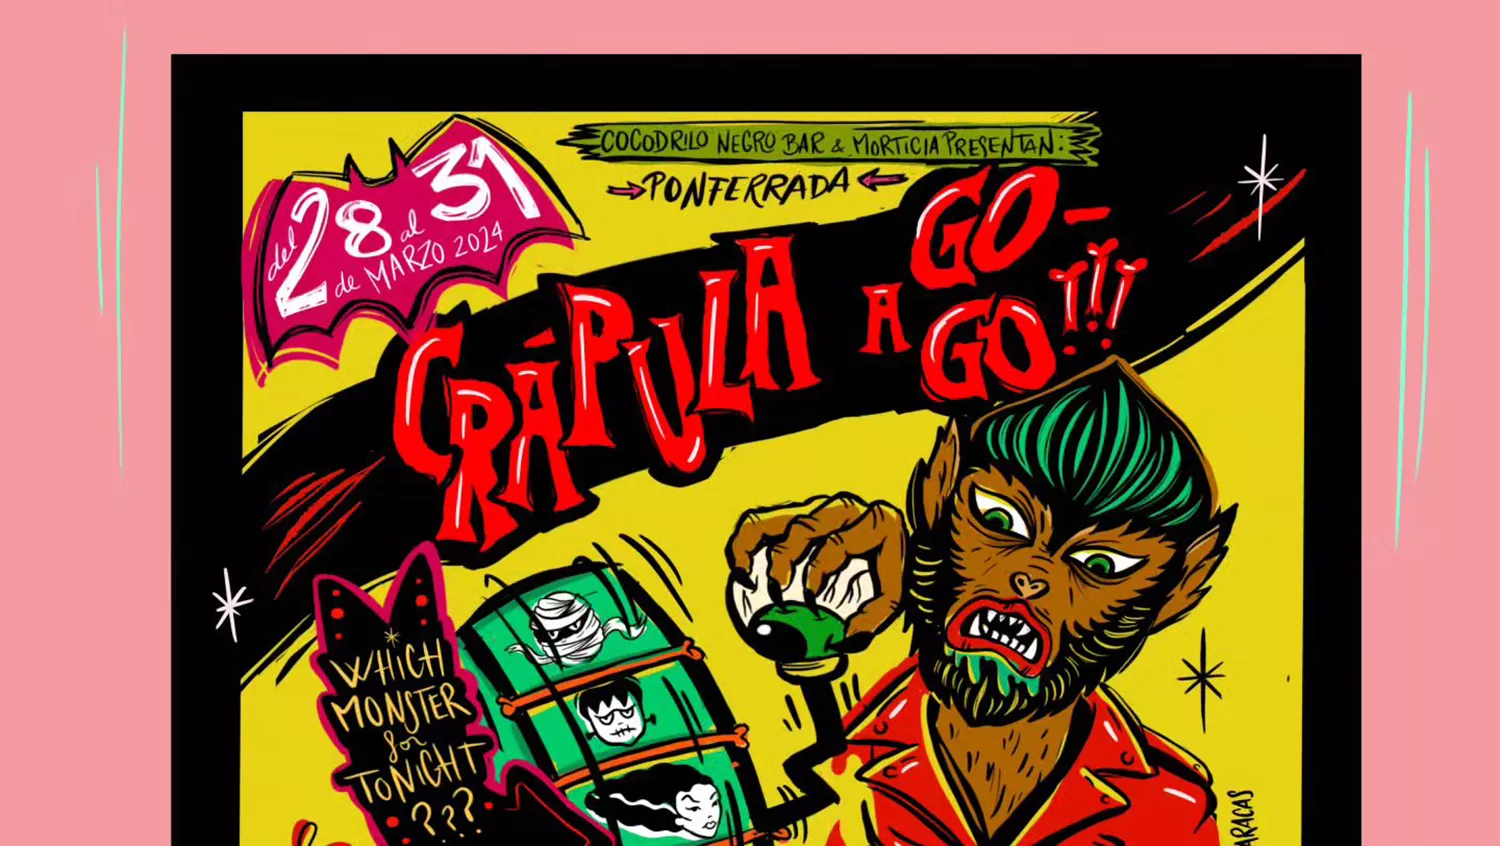 La II edición del 'Crápula a Go Go!' regresa a Ponferrada desde el 28 al 31 marzo